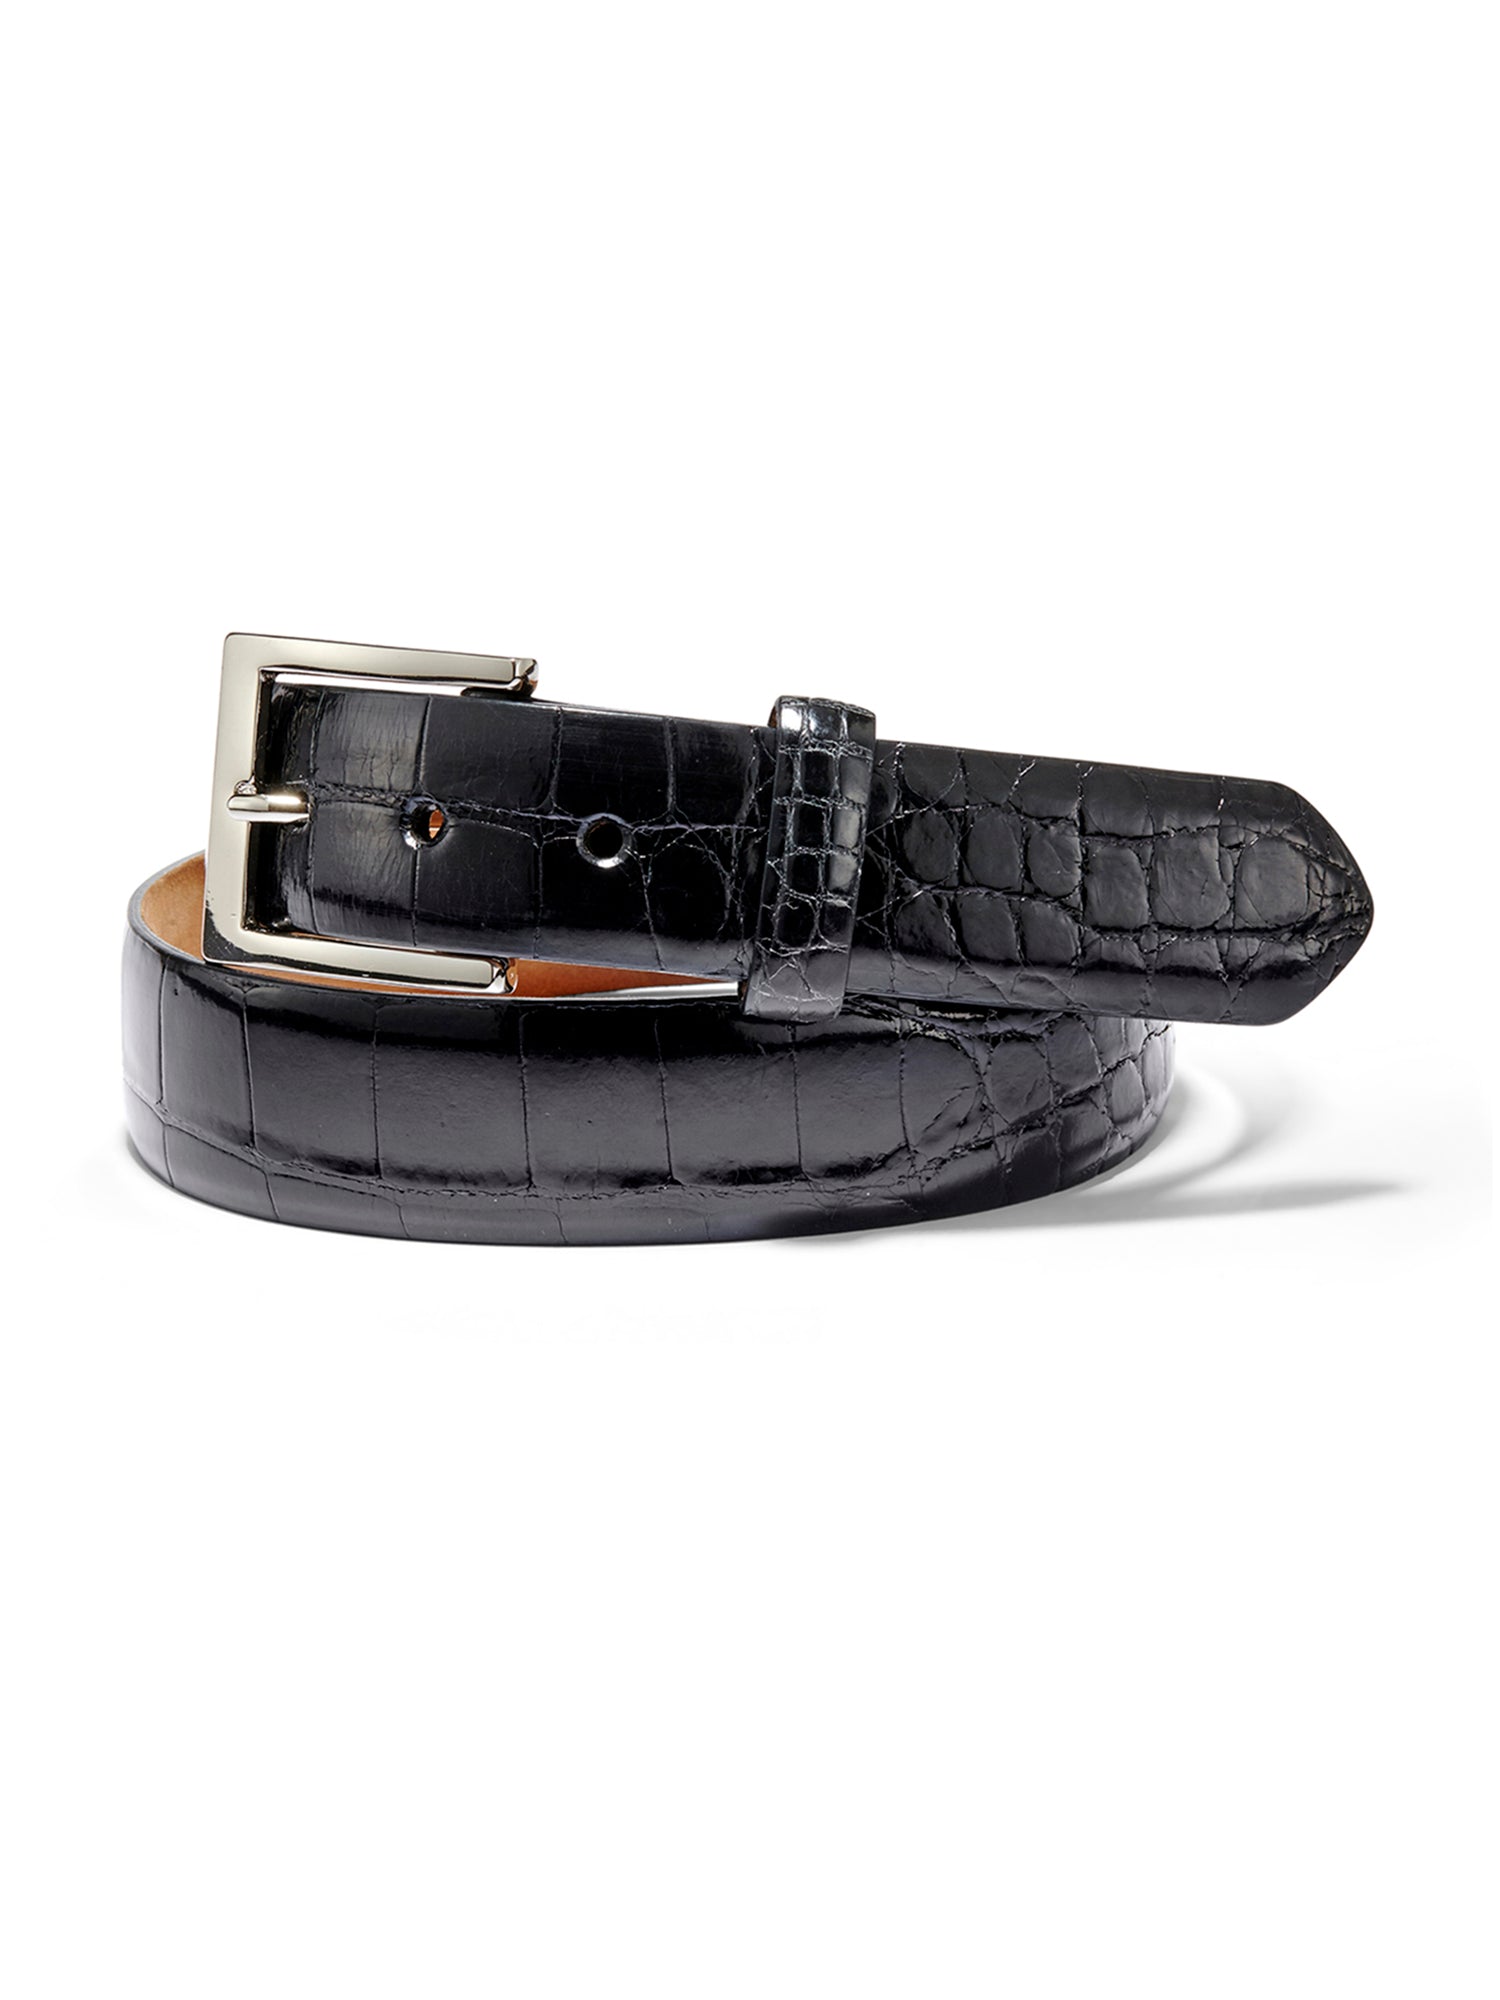 LC Leather Glazed Tochigi Belt Blanks Black H105cm x W2.0cm